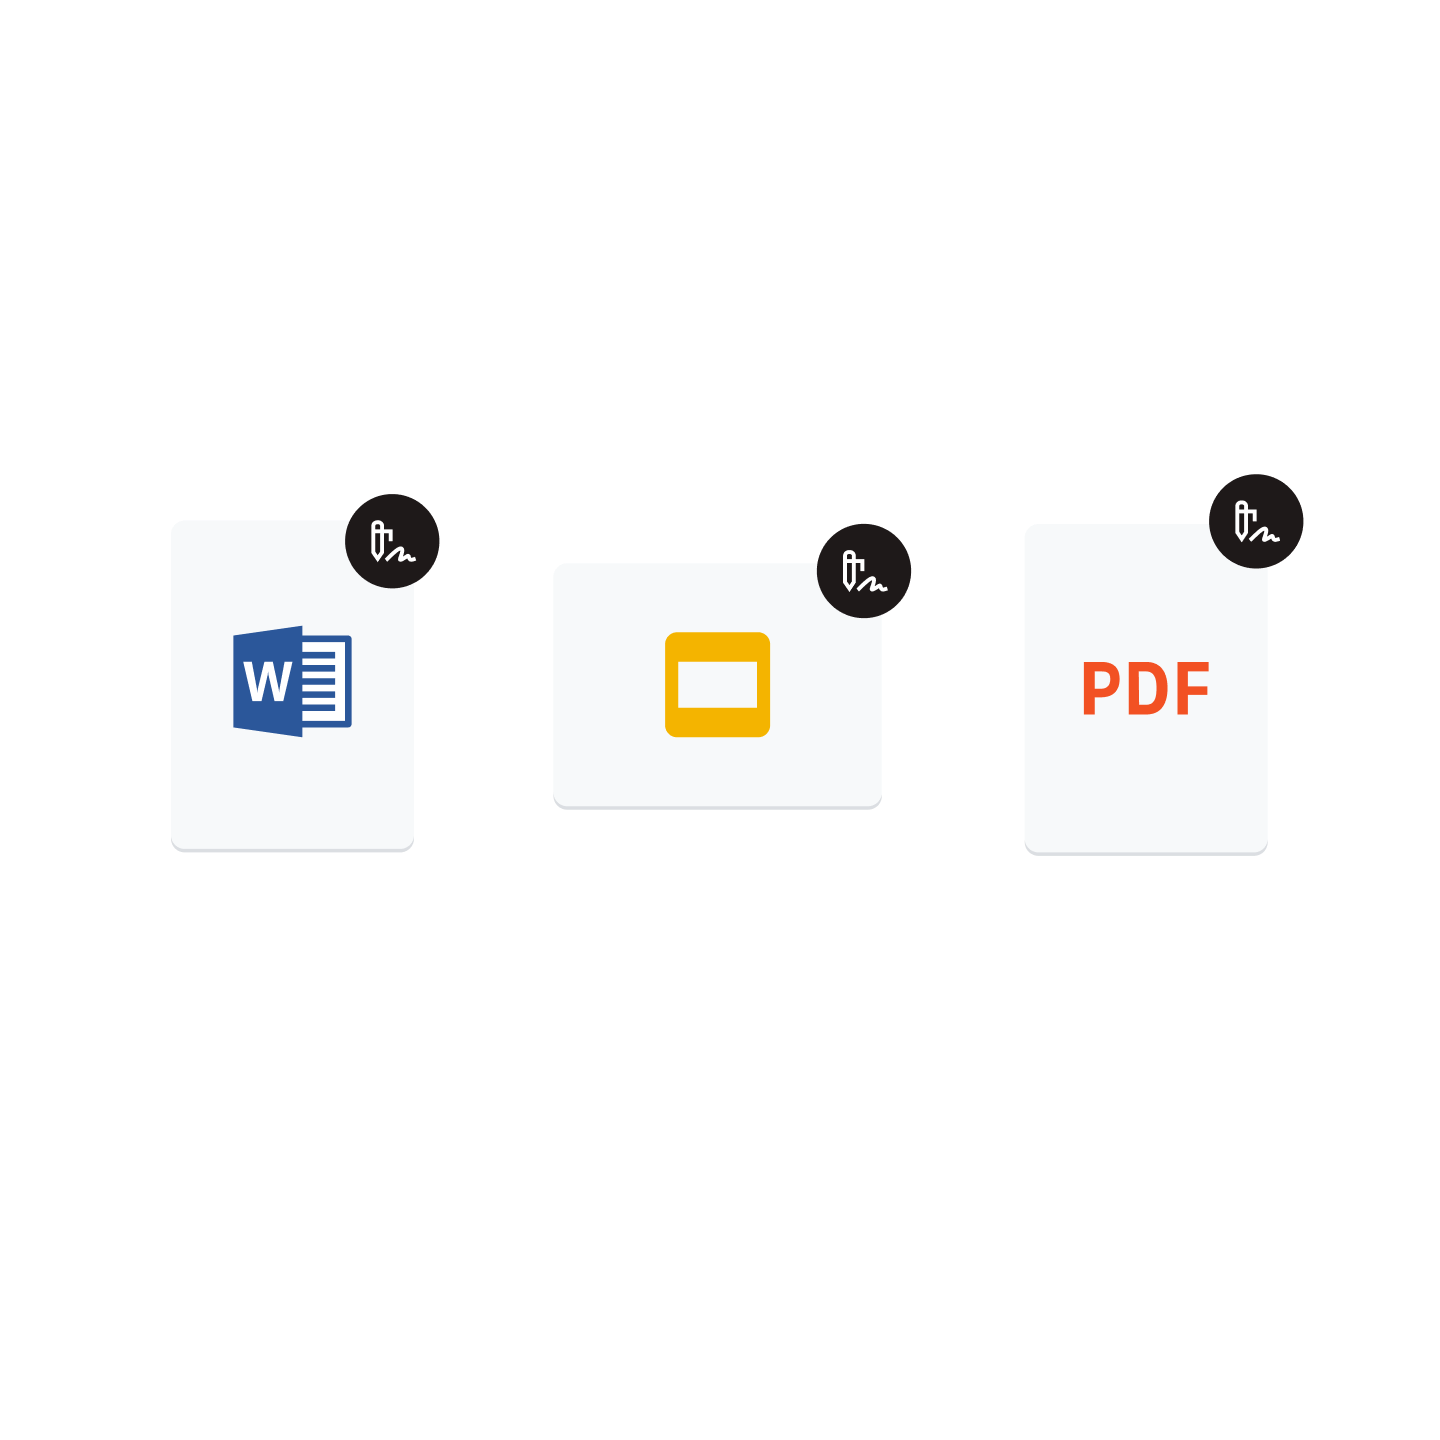 Microsoft Word アイコン、Google スライド アイコン、PDF アイコン